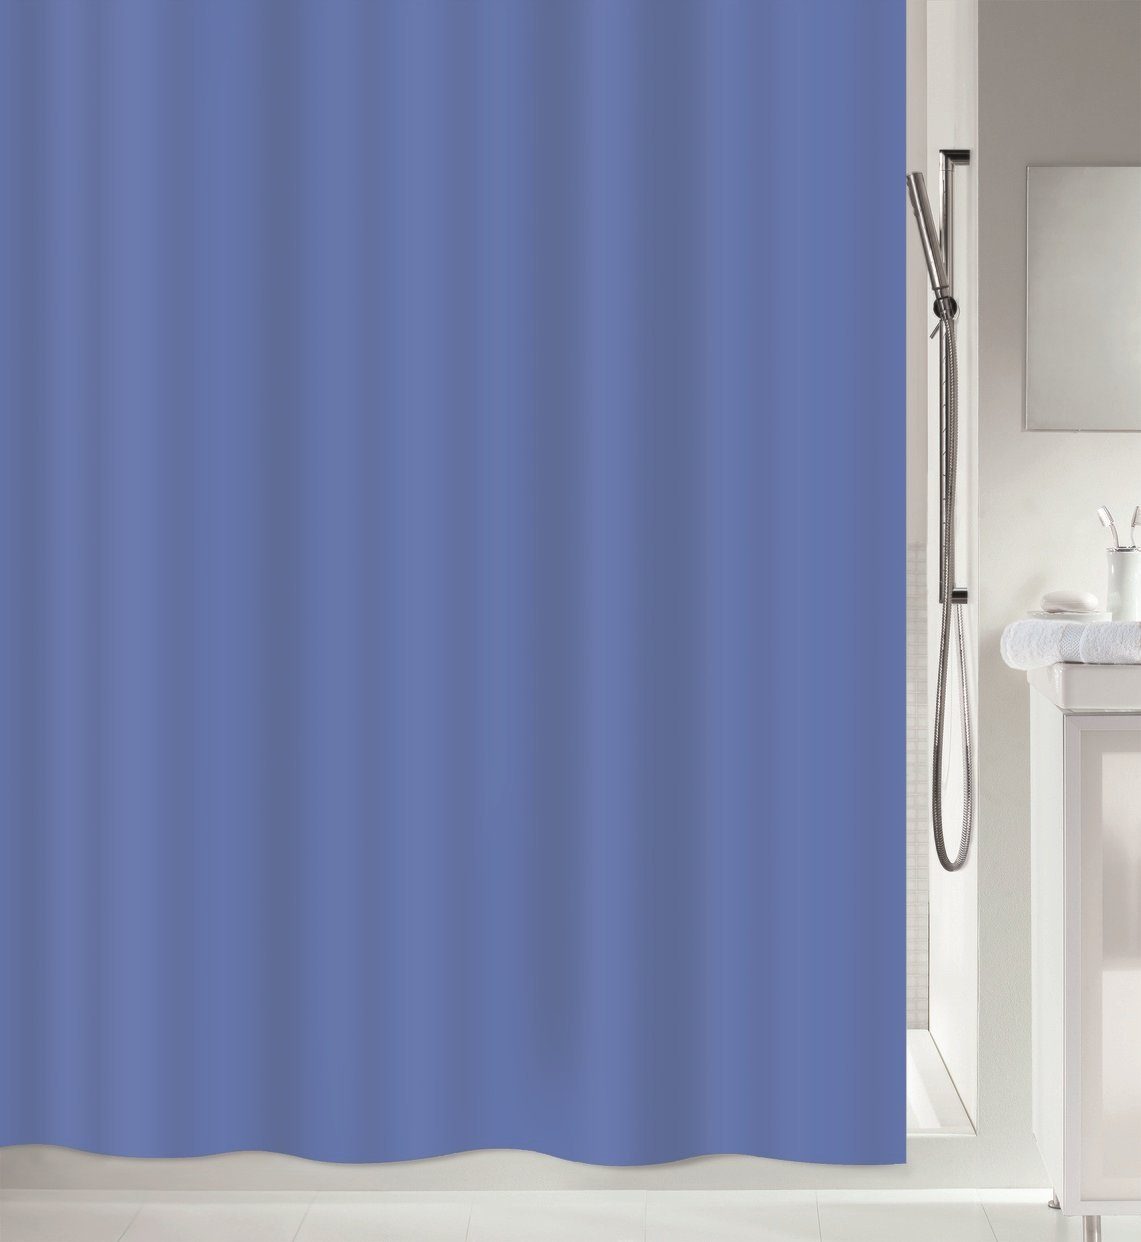 spirella Duschvorhang ATLAS Breite 120 cm, Premium Textil-Duschvorhang,  100% Polyester, wasserabweisend, Anti-Schimmel-Effekt, waschbar 40°, uni,  Farbe blau, Größe 120 x 200 cm